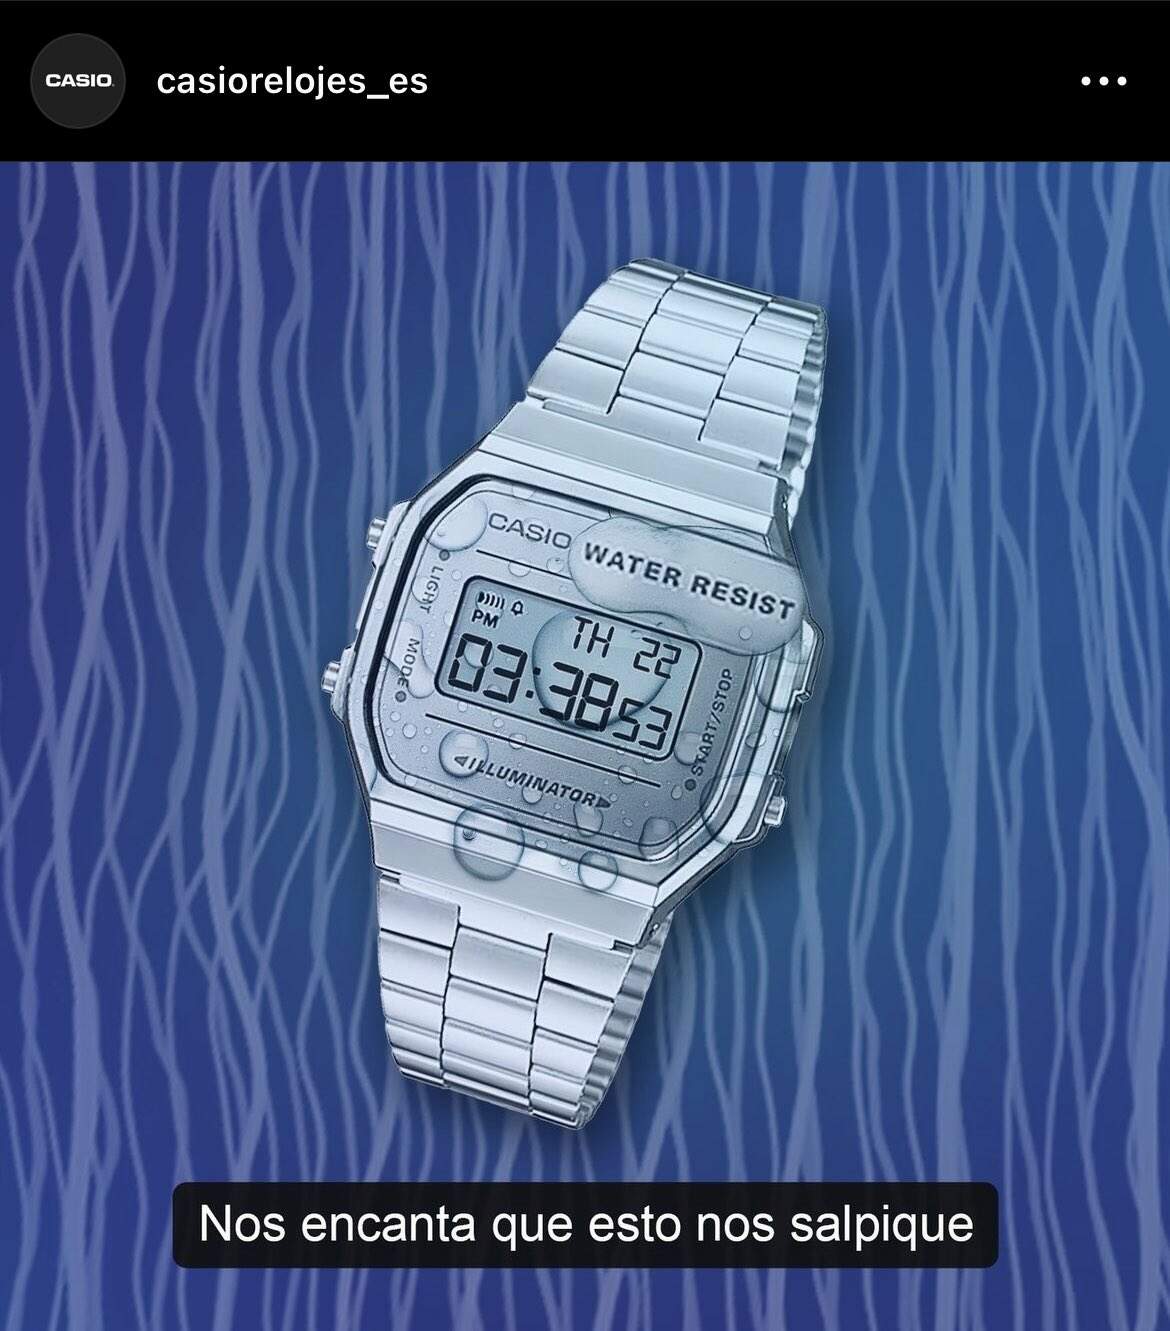 Post da Casio via Instagram 